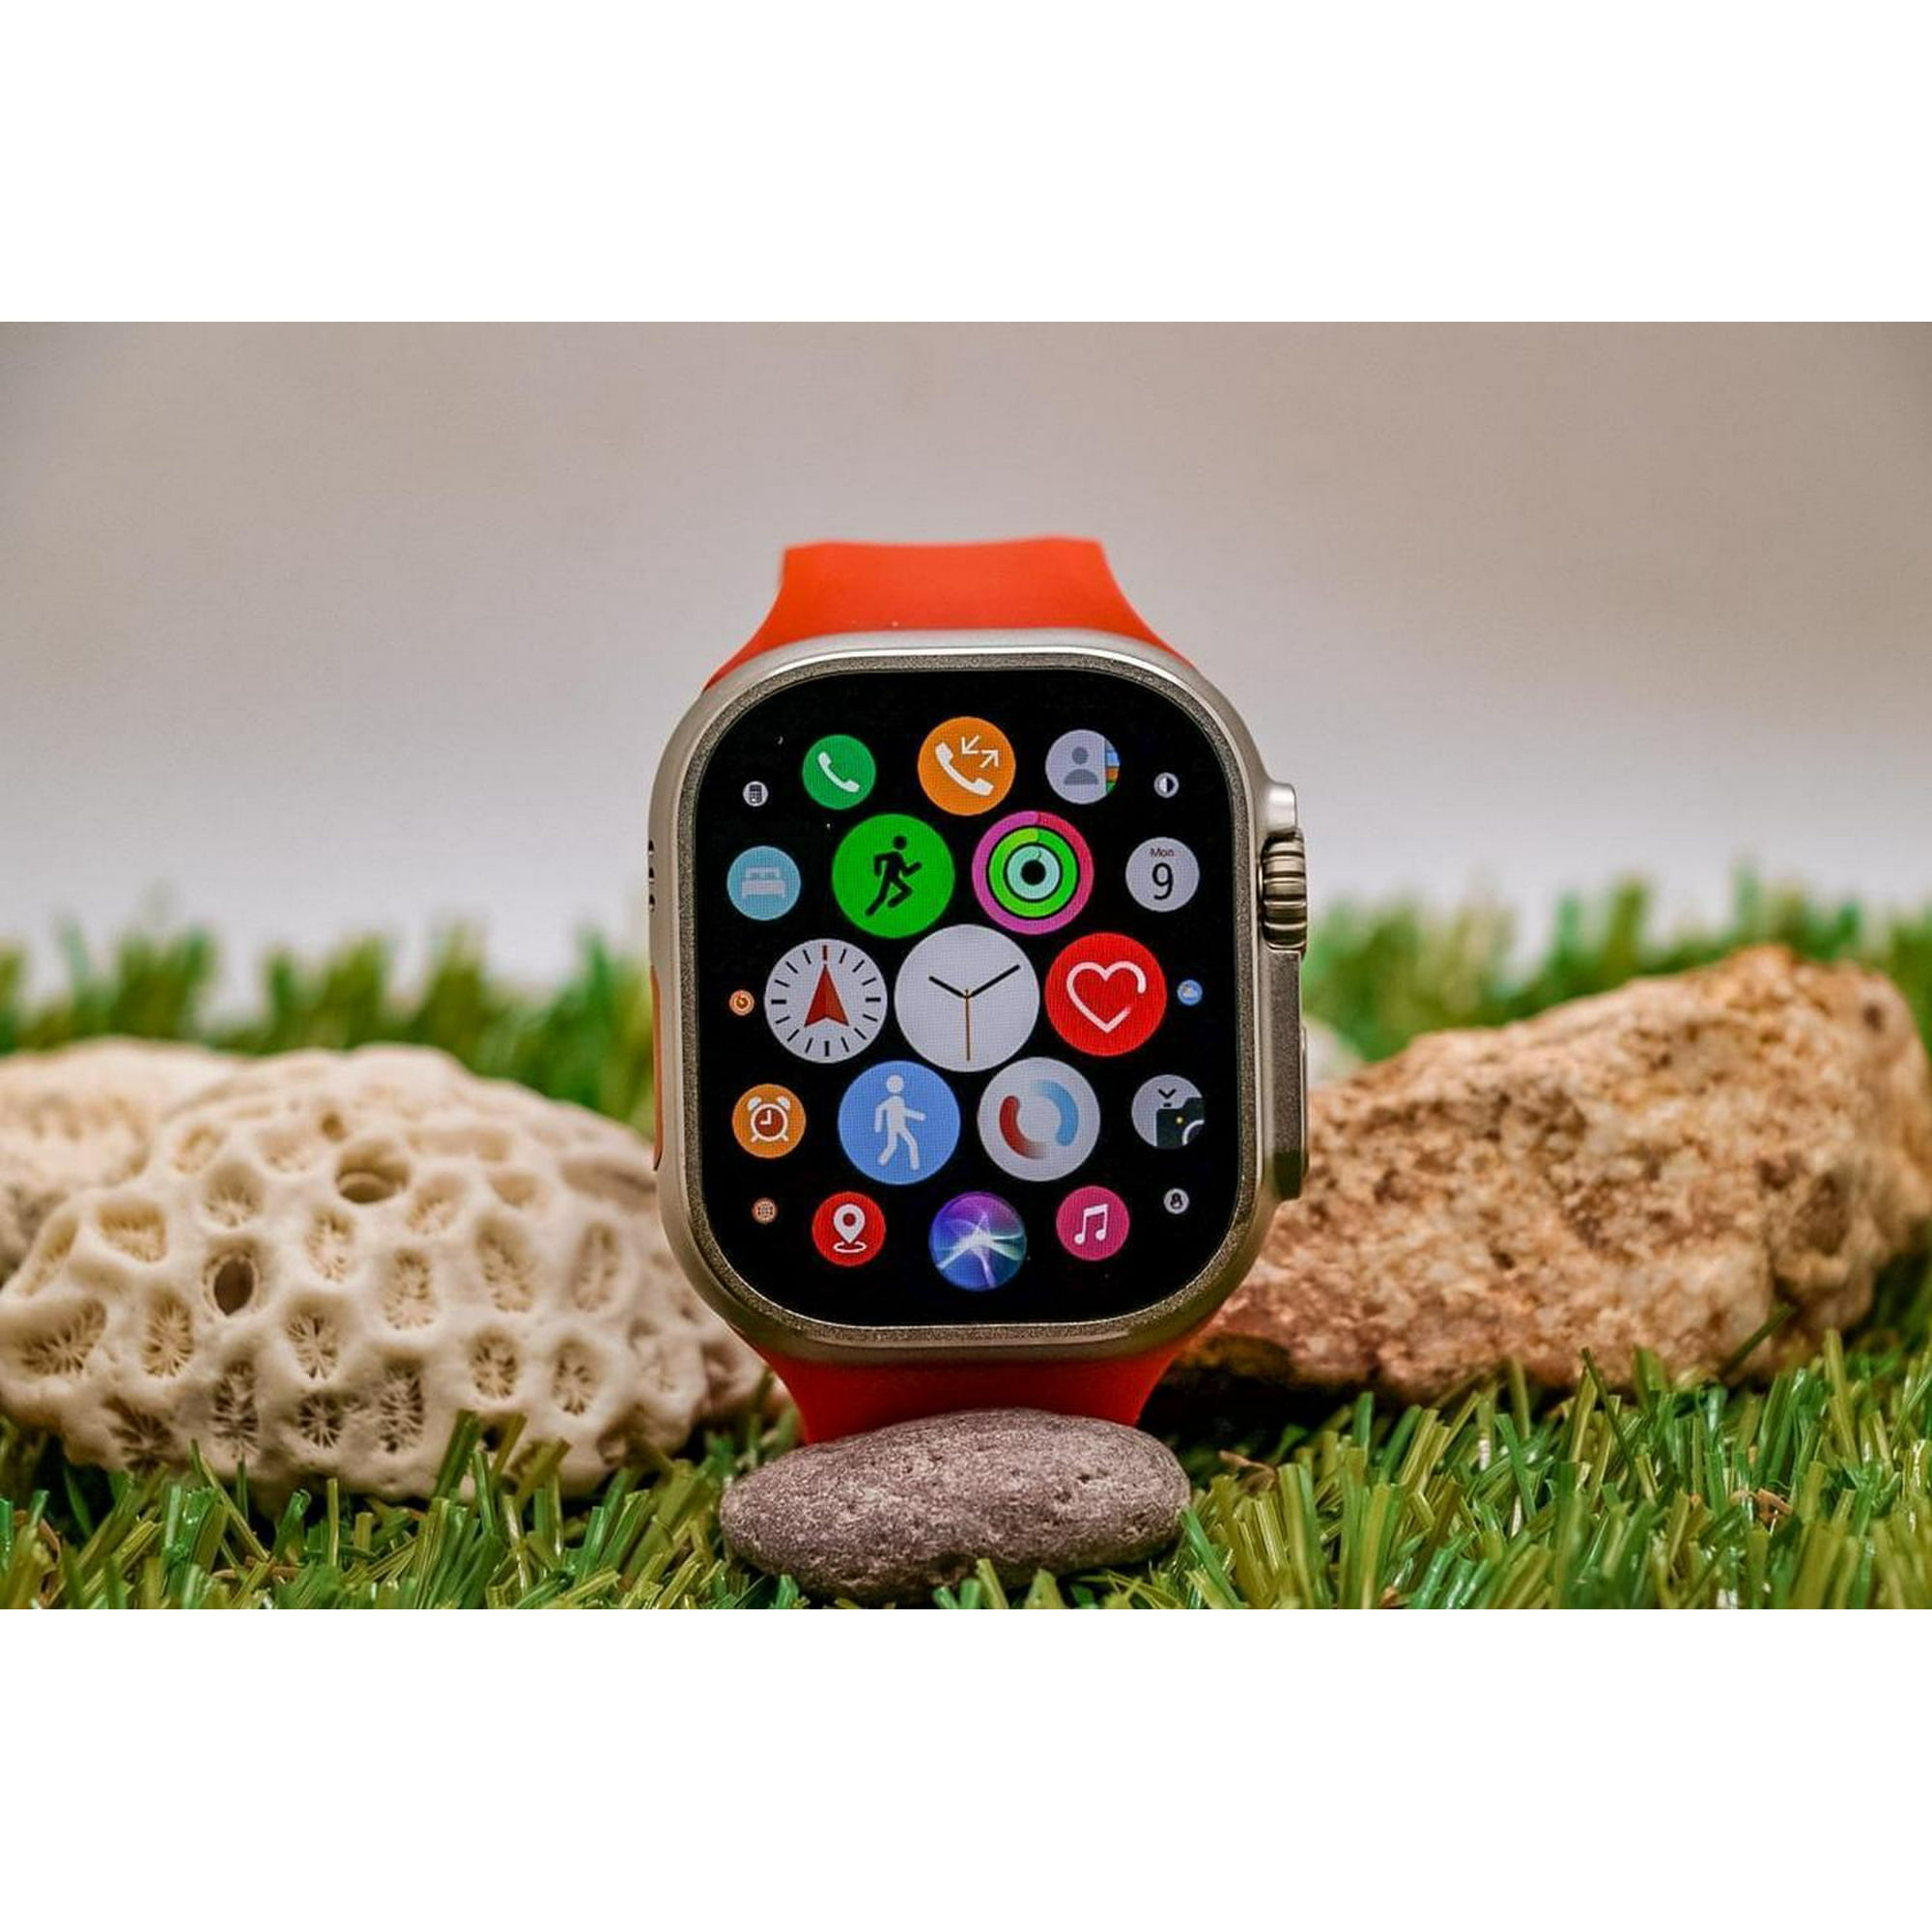 Hello Watch 3 , uno de los mejores smartwatch calidad precio que hay a